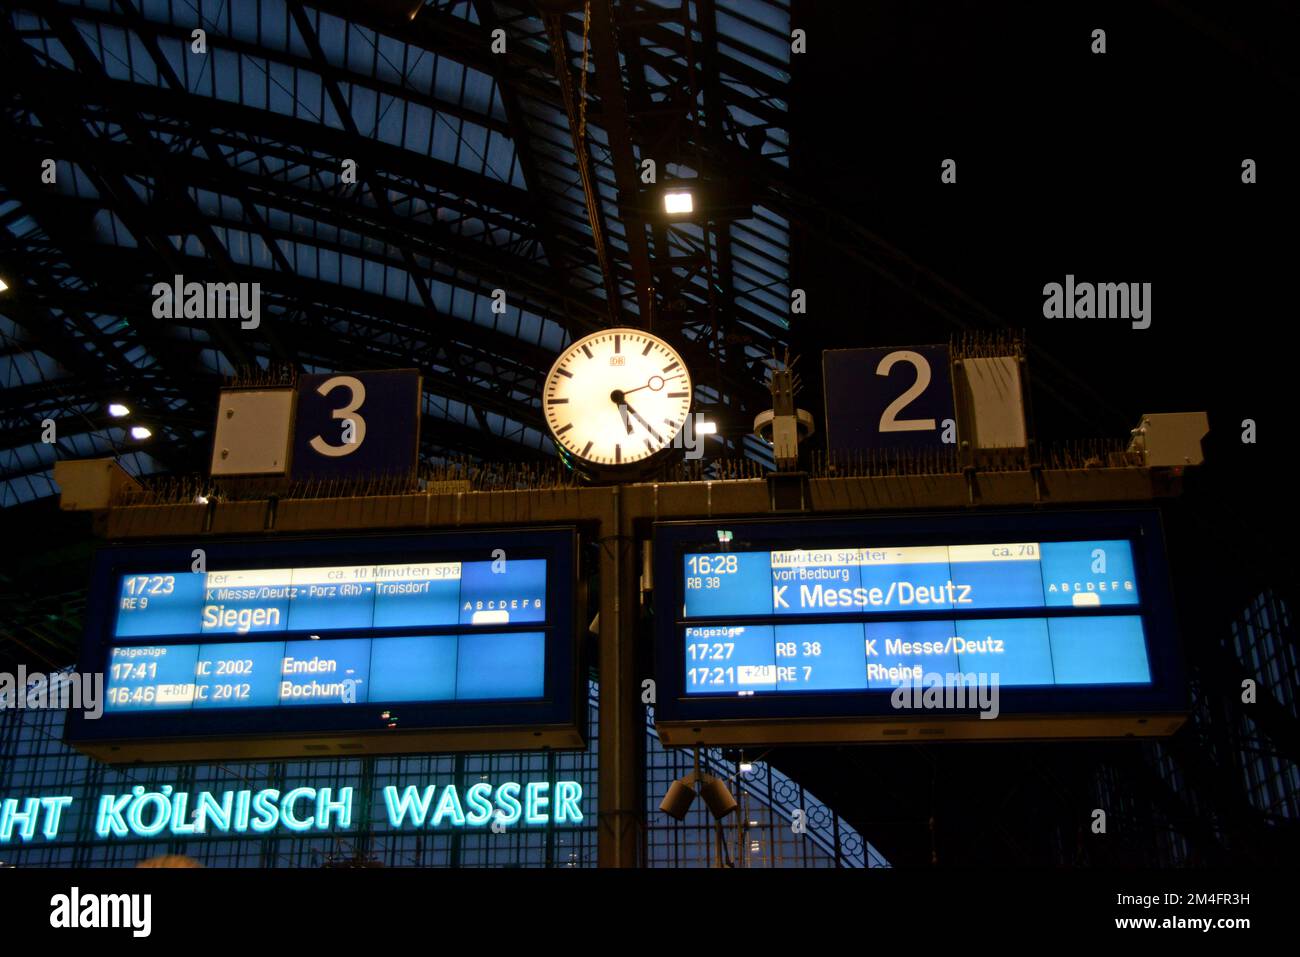 Una scheda indicatrice della destinazione dei treni, che mostra diversi treni della Deustche Bahn in ritardo alla stazione centrale BHF di Colonia, Germania Foto Stock